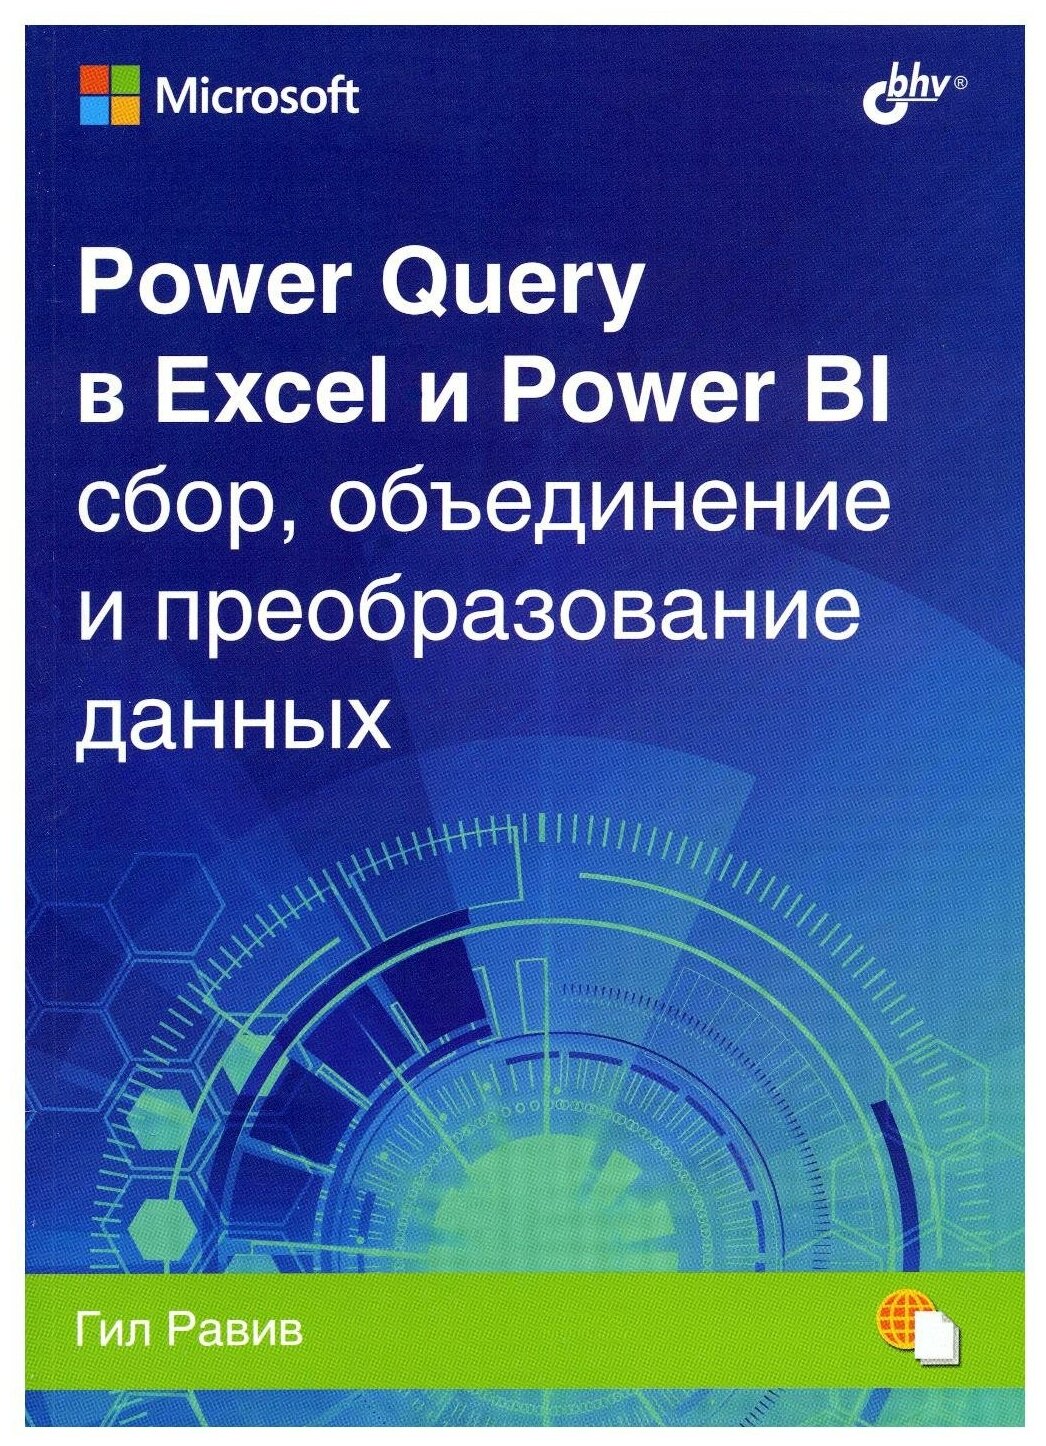 Power Query в Excel и Power BI. Сбор, объединение и преобразование данных - фото №1